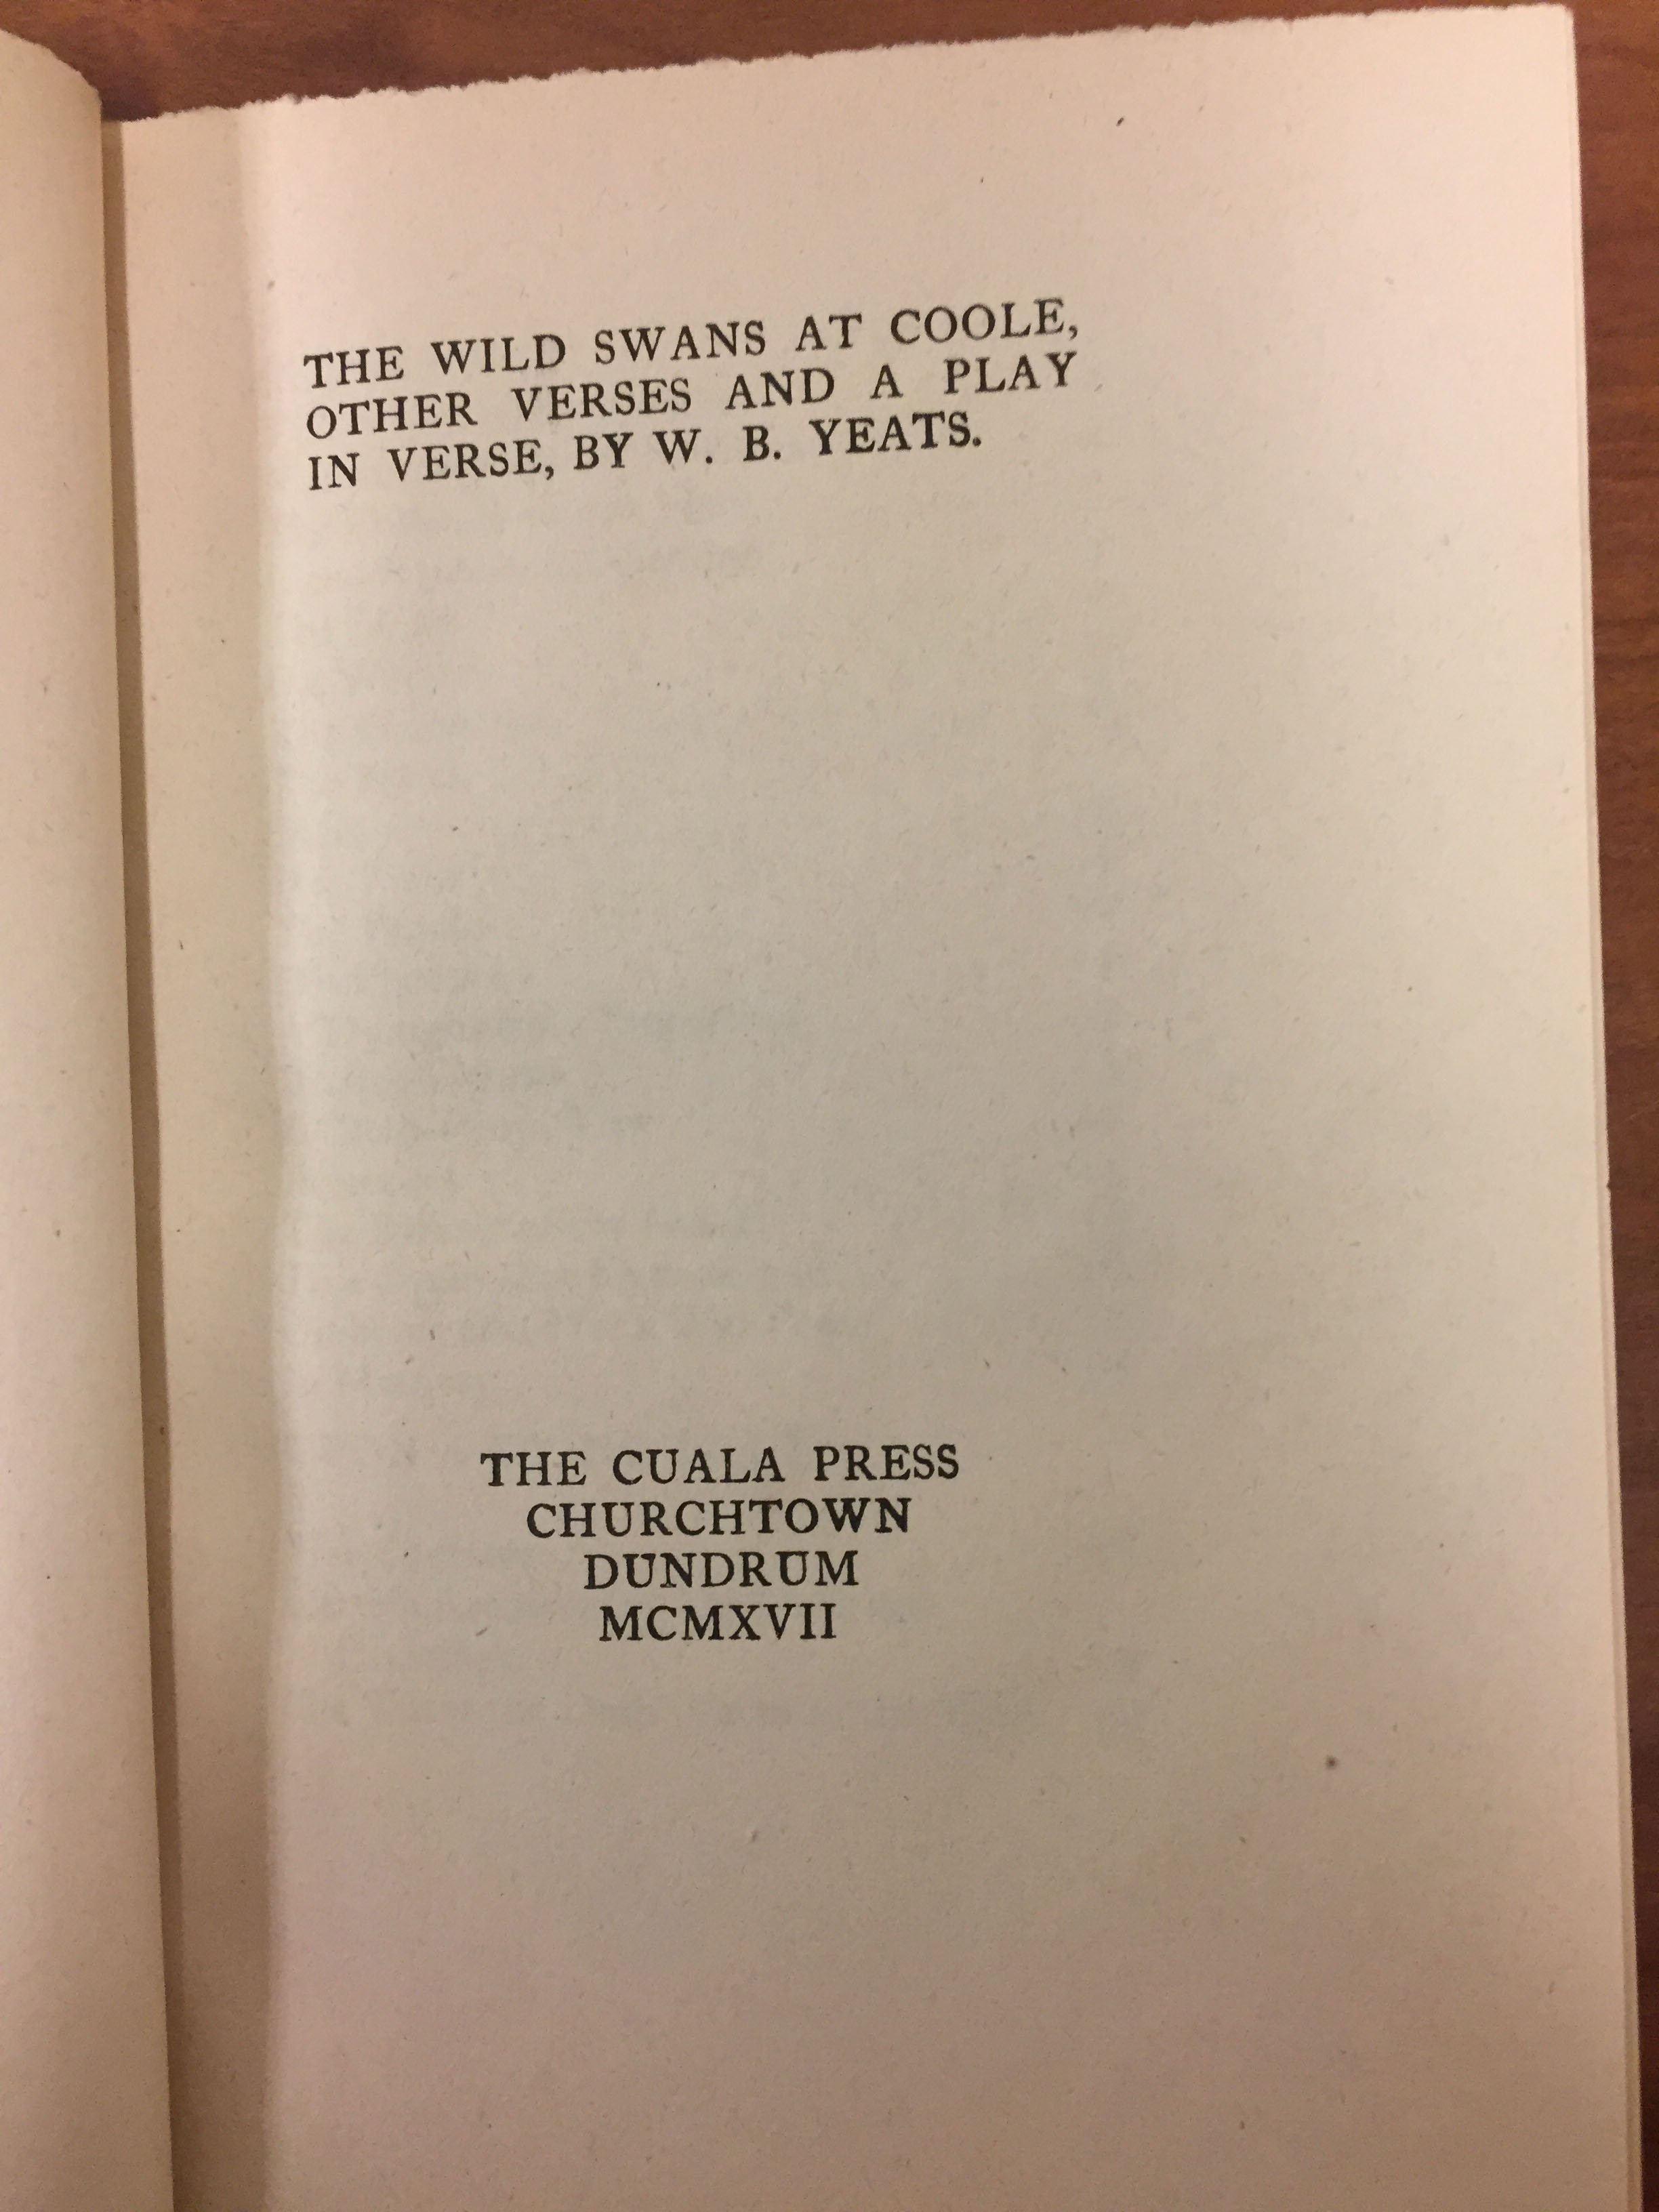 A typical Cuala Press title page. (PR5904 .W5 1917)